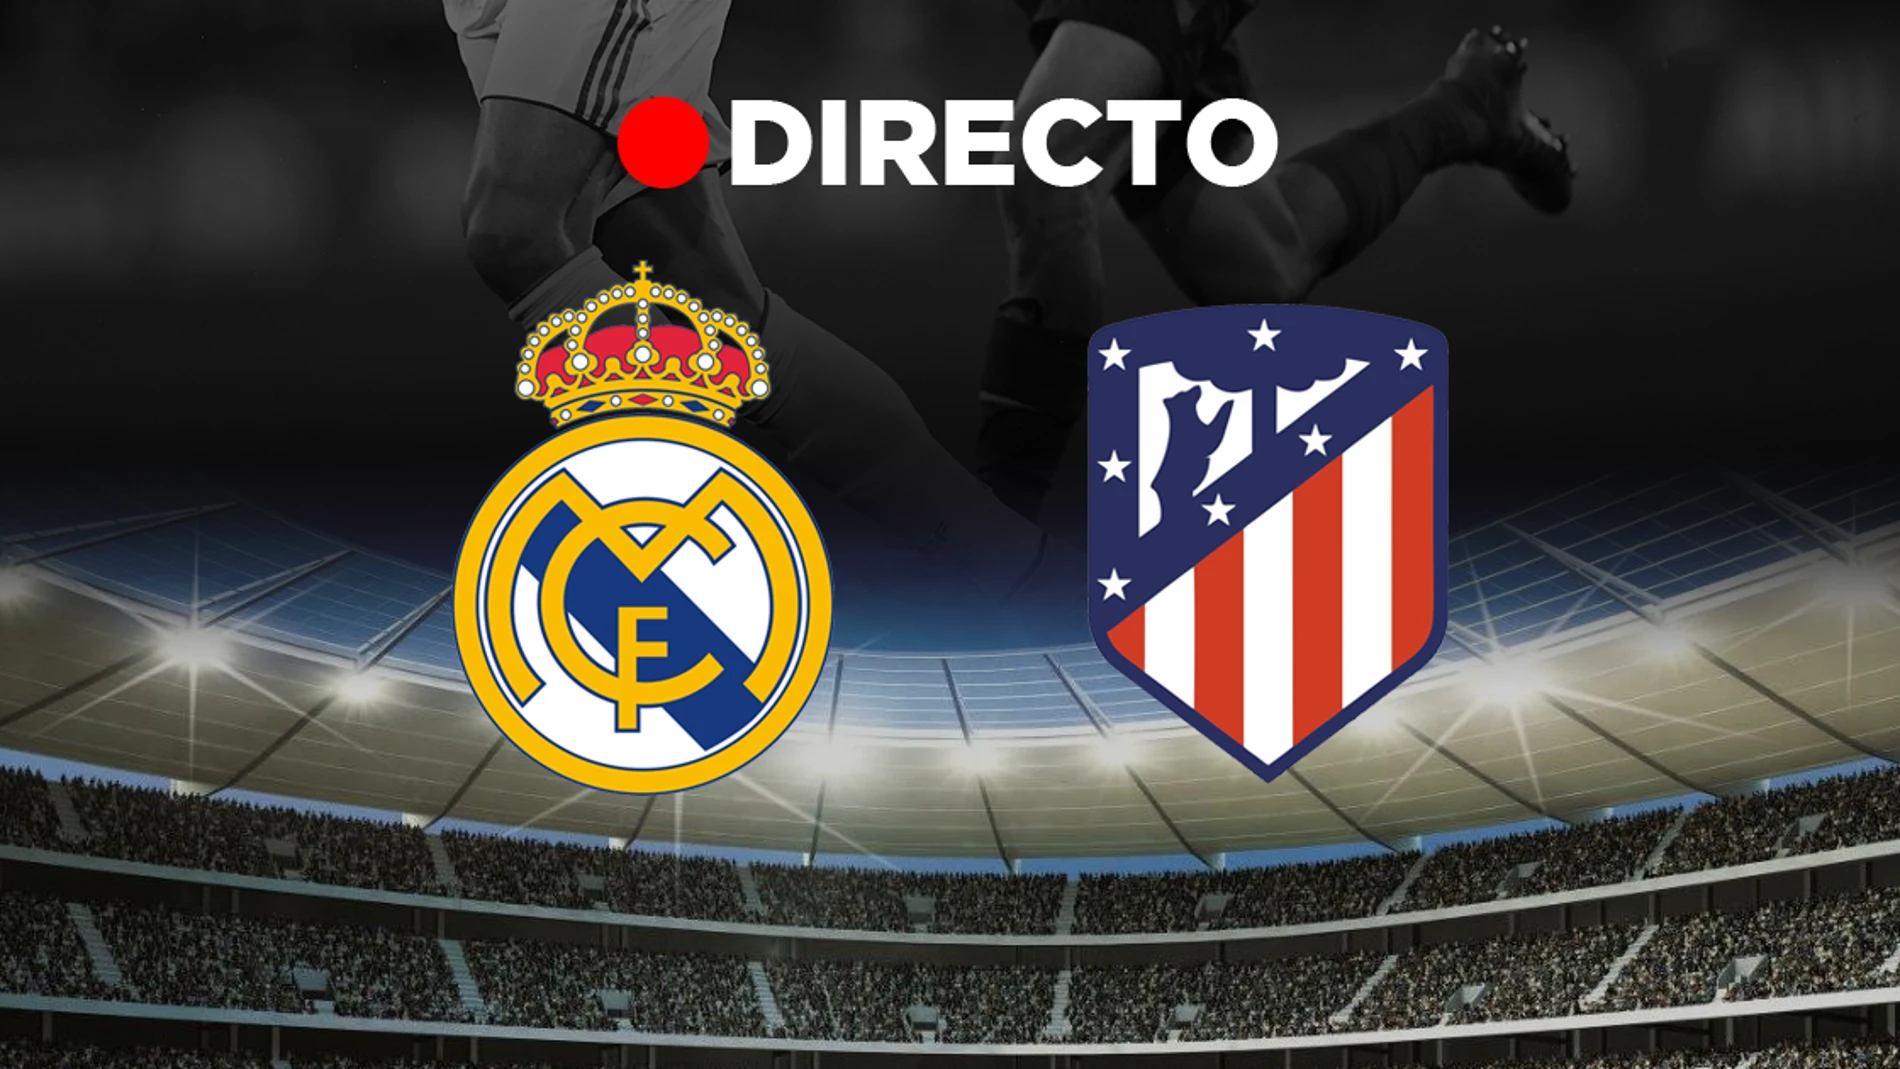 Atlético - Real Madrid, fútbol en directo